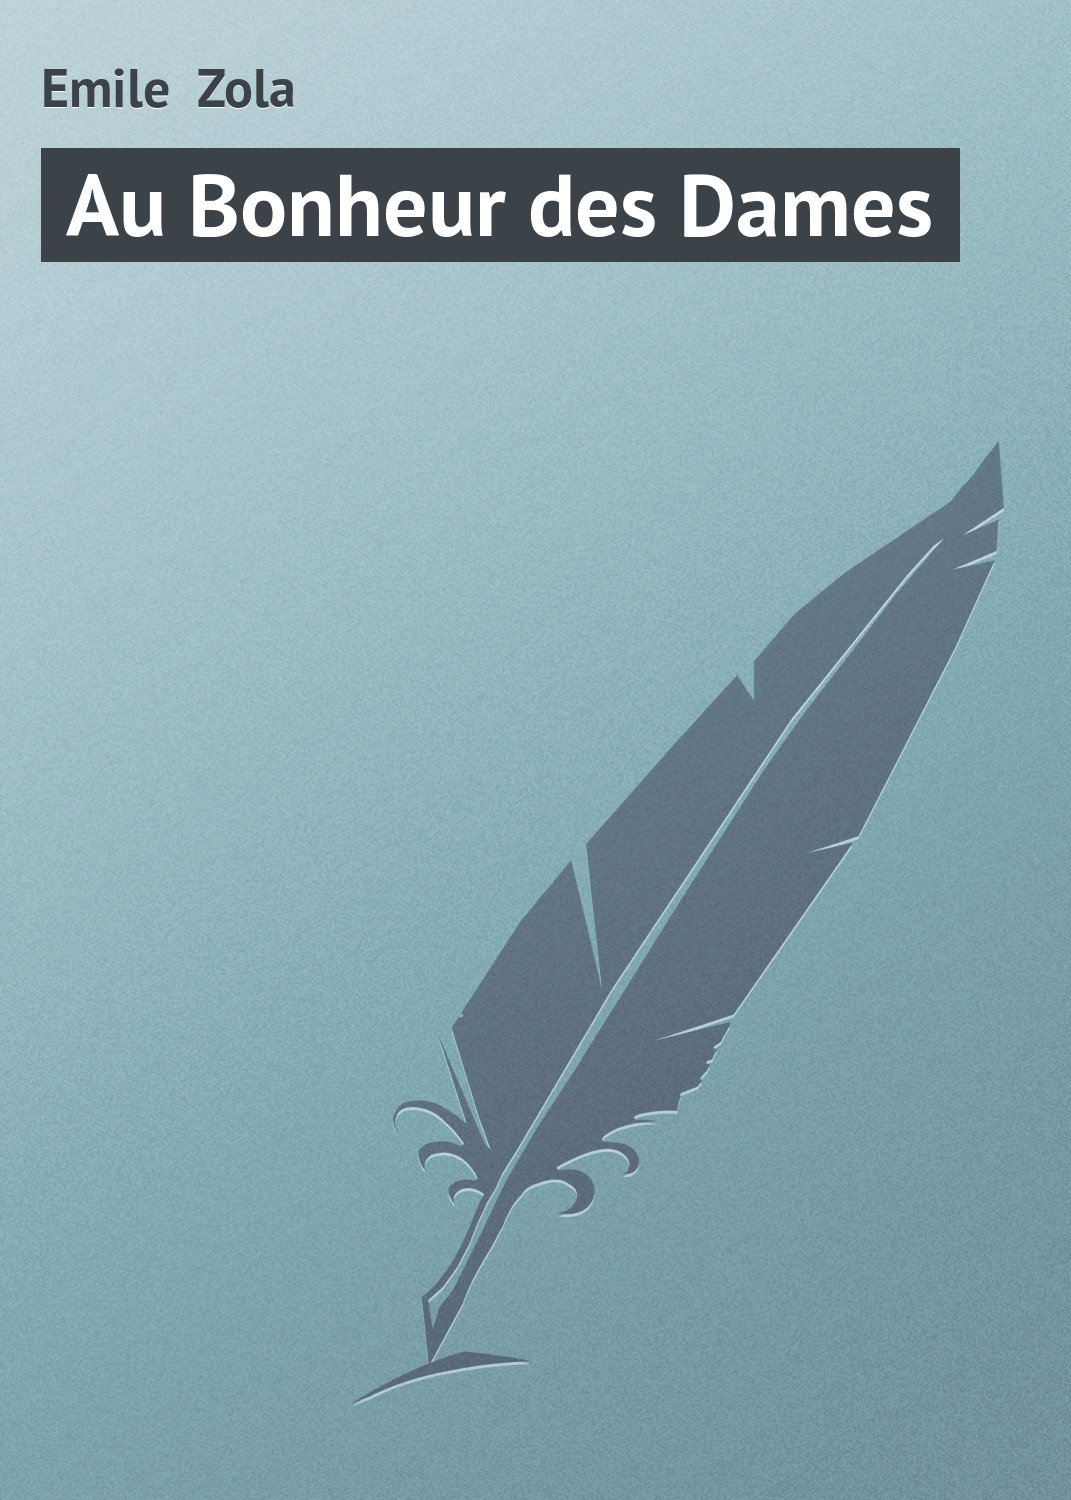 Книга Au Bonheur des Dames из серии , созданная Emile Zola, может относится к жанру Зарубежная старинная литература, Зарубежная классика. Стоимость электронной книги Au Bonheur des Dames с идентификатором 21104446 составляет 5.99 руб.